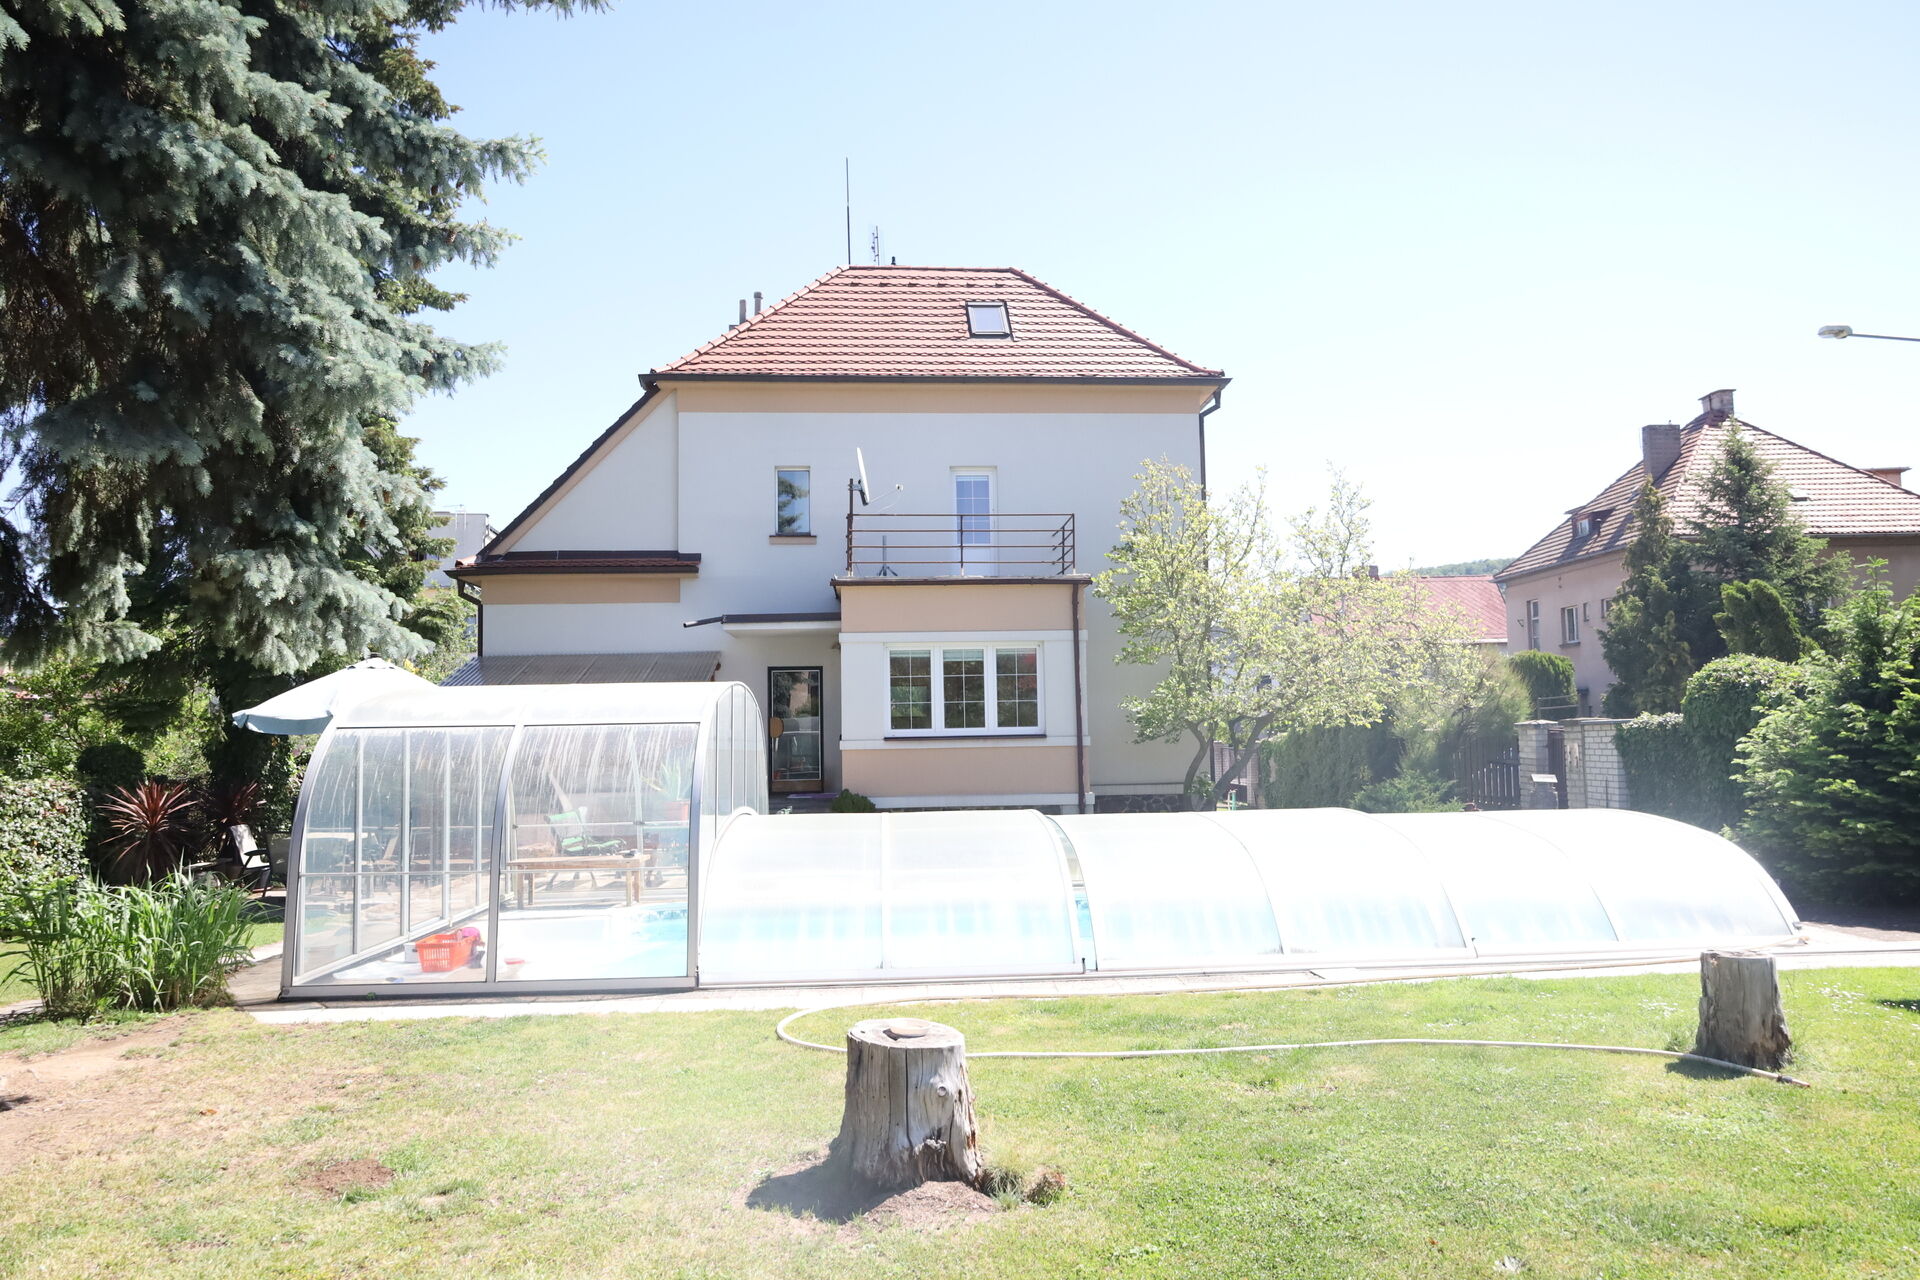 Prodej rodinné vily Praha 5 – Zbraslav s pozemkem 836 m2 v krásné lokalitě.